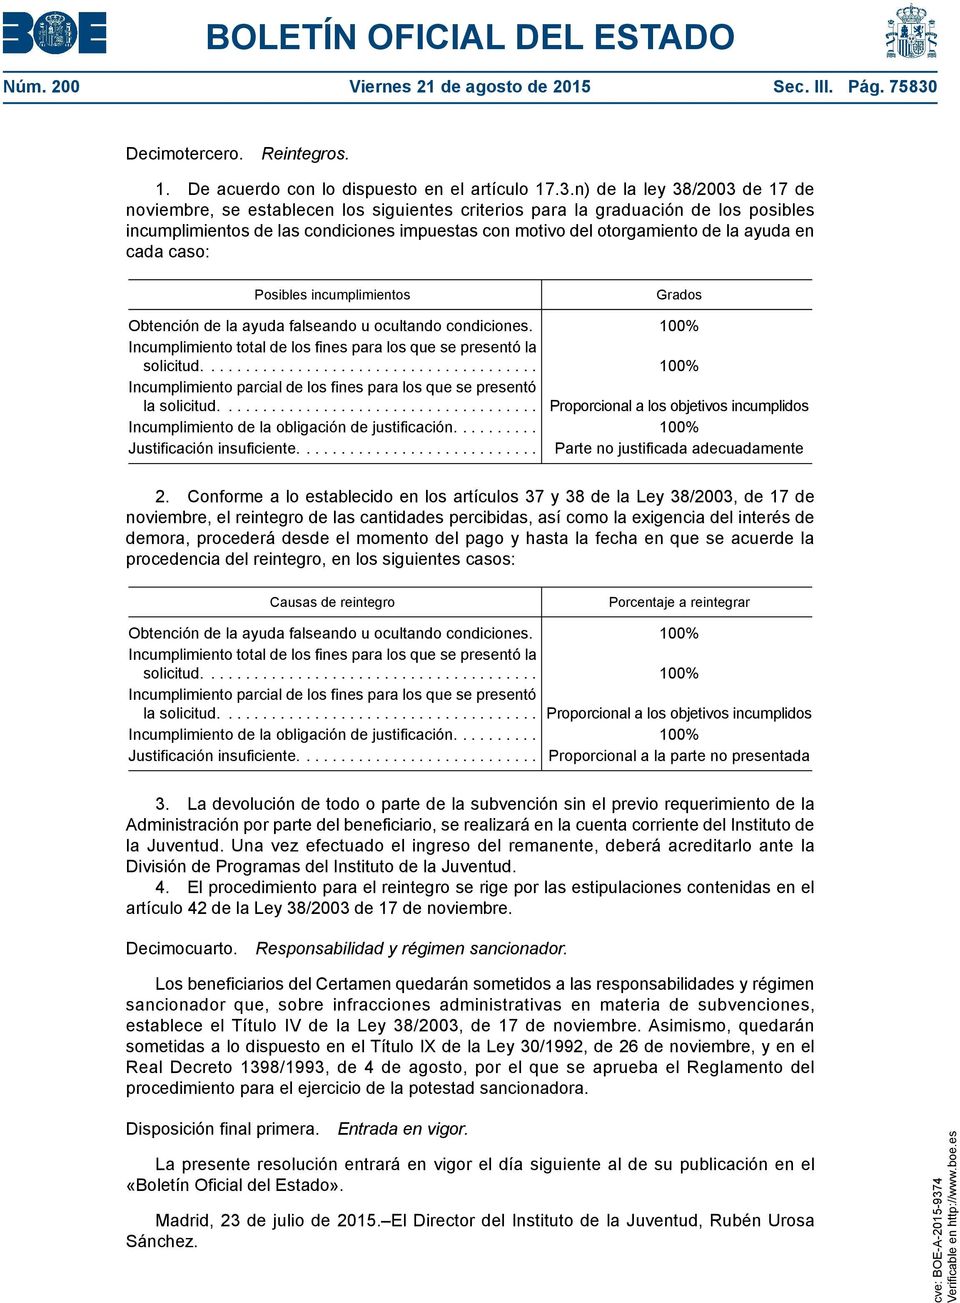 n) de la ley 38/2003 de 17 de noviembre, se establecen los siguientes criterios para la graduación de los posibles incumplimientos de las condiciones impuestas con motivo del otorgamiento de la ayuda